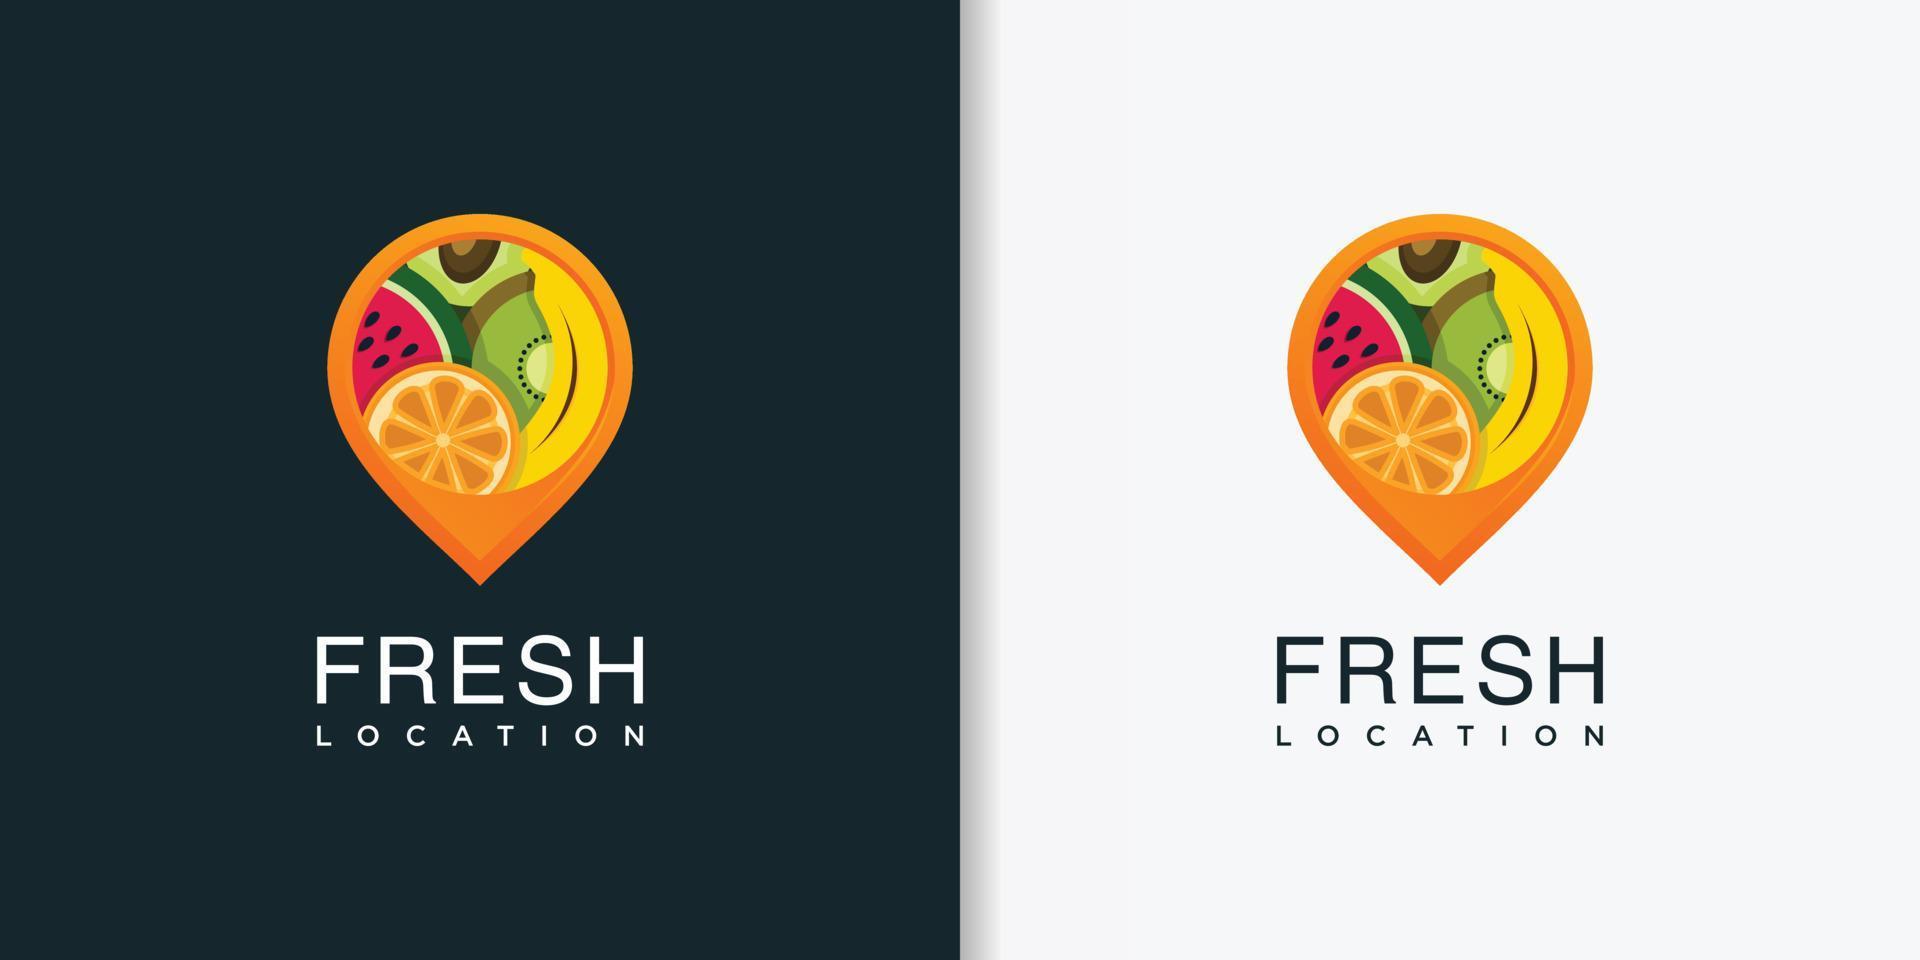 ubicación de logotipo fresco con plantilla de diseño de estilo abstracto moderno, fresco, fruta, ubicación, pin, vector premium